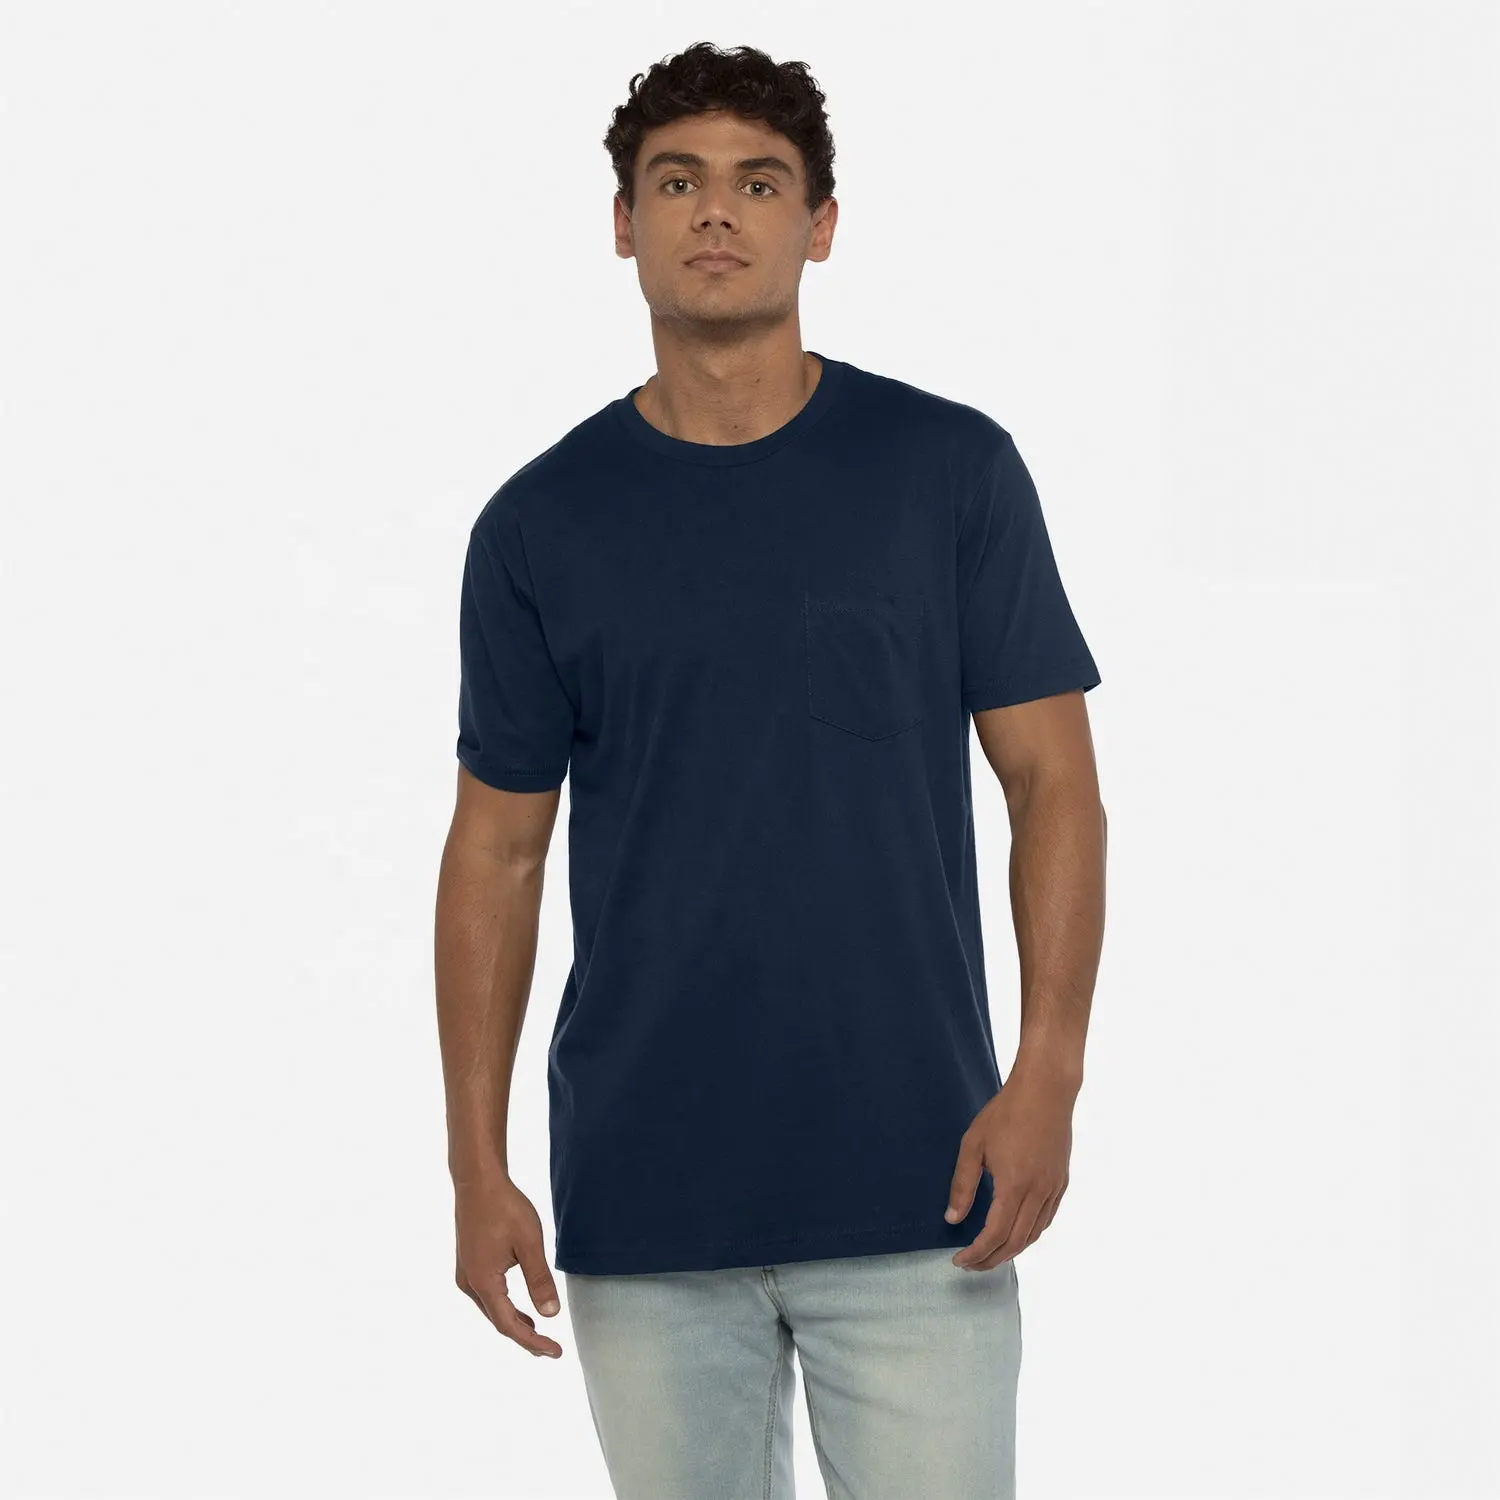 T-shirt tascabile in cotone Unisex di mezzanotte stile 3605 di abbigliamento di livello successivo in cotone Unisex con il tuo logo